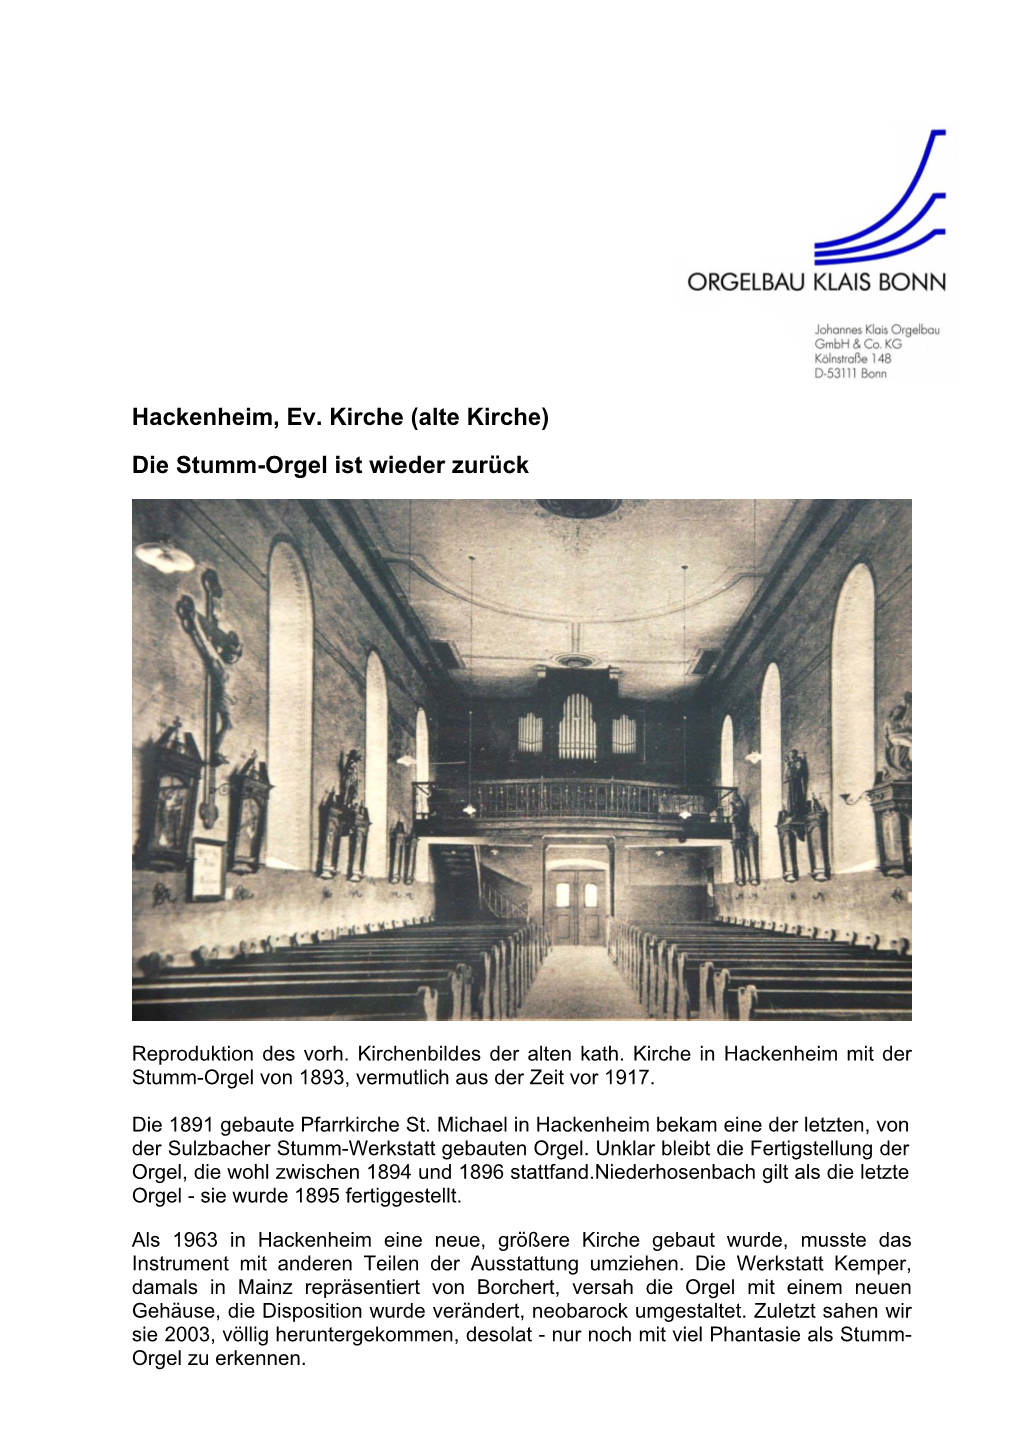 Hackenheim, Ev. Kirche (Alte Kirche) Die Stumm-Orgel Ist Wieder Zurück